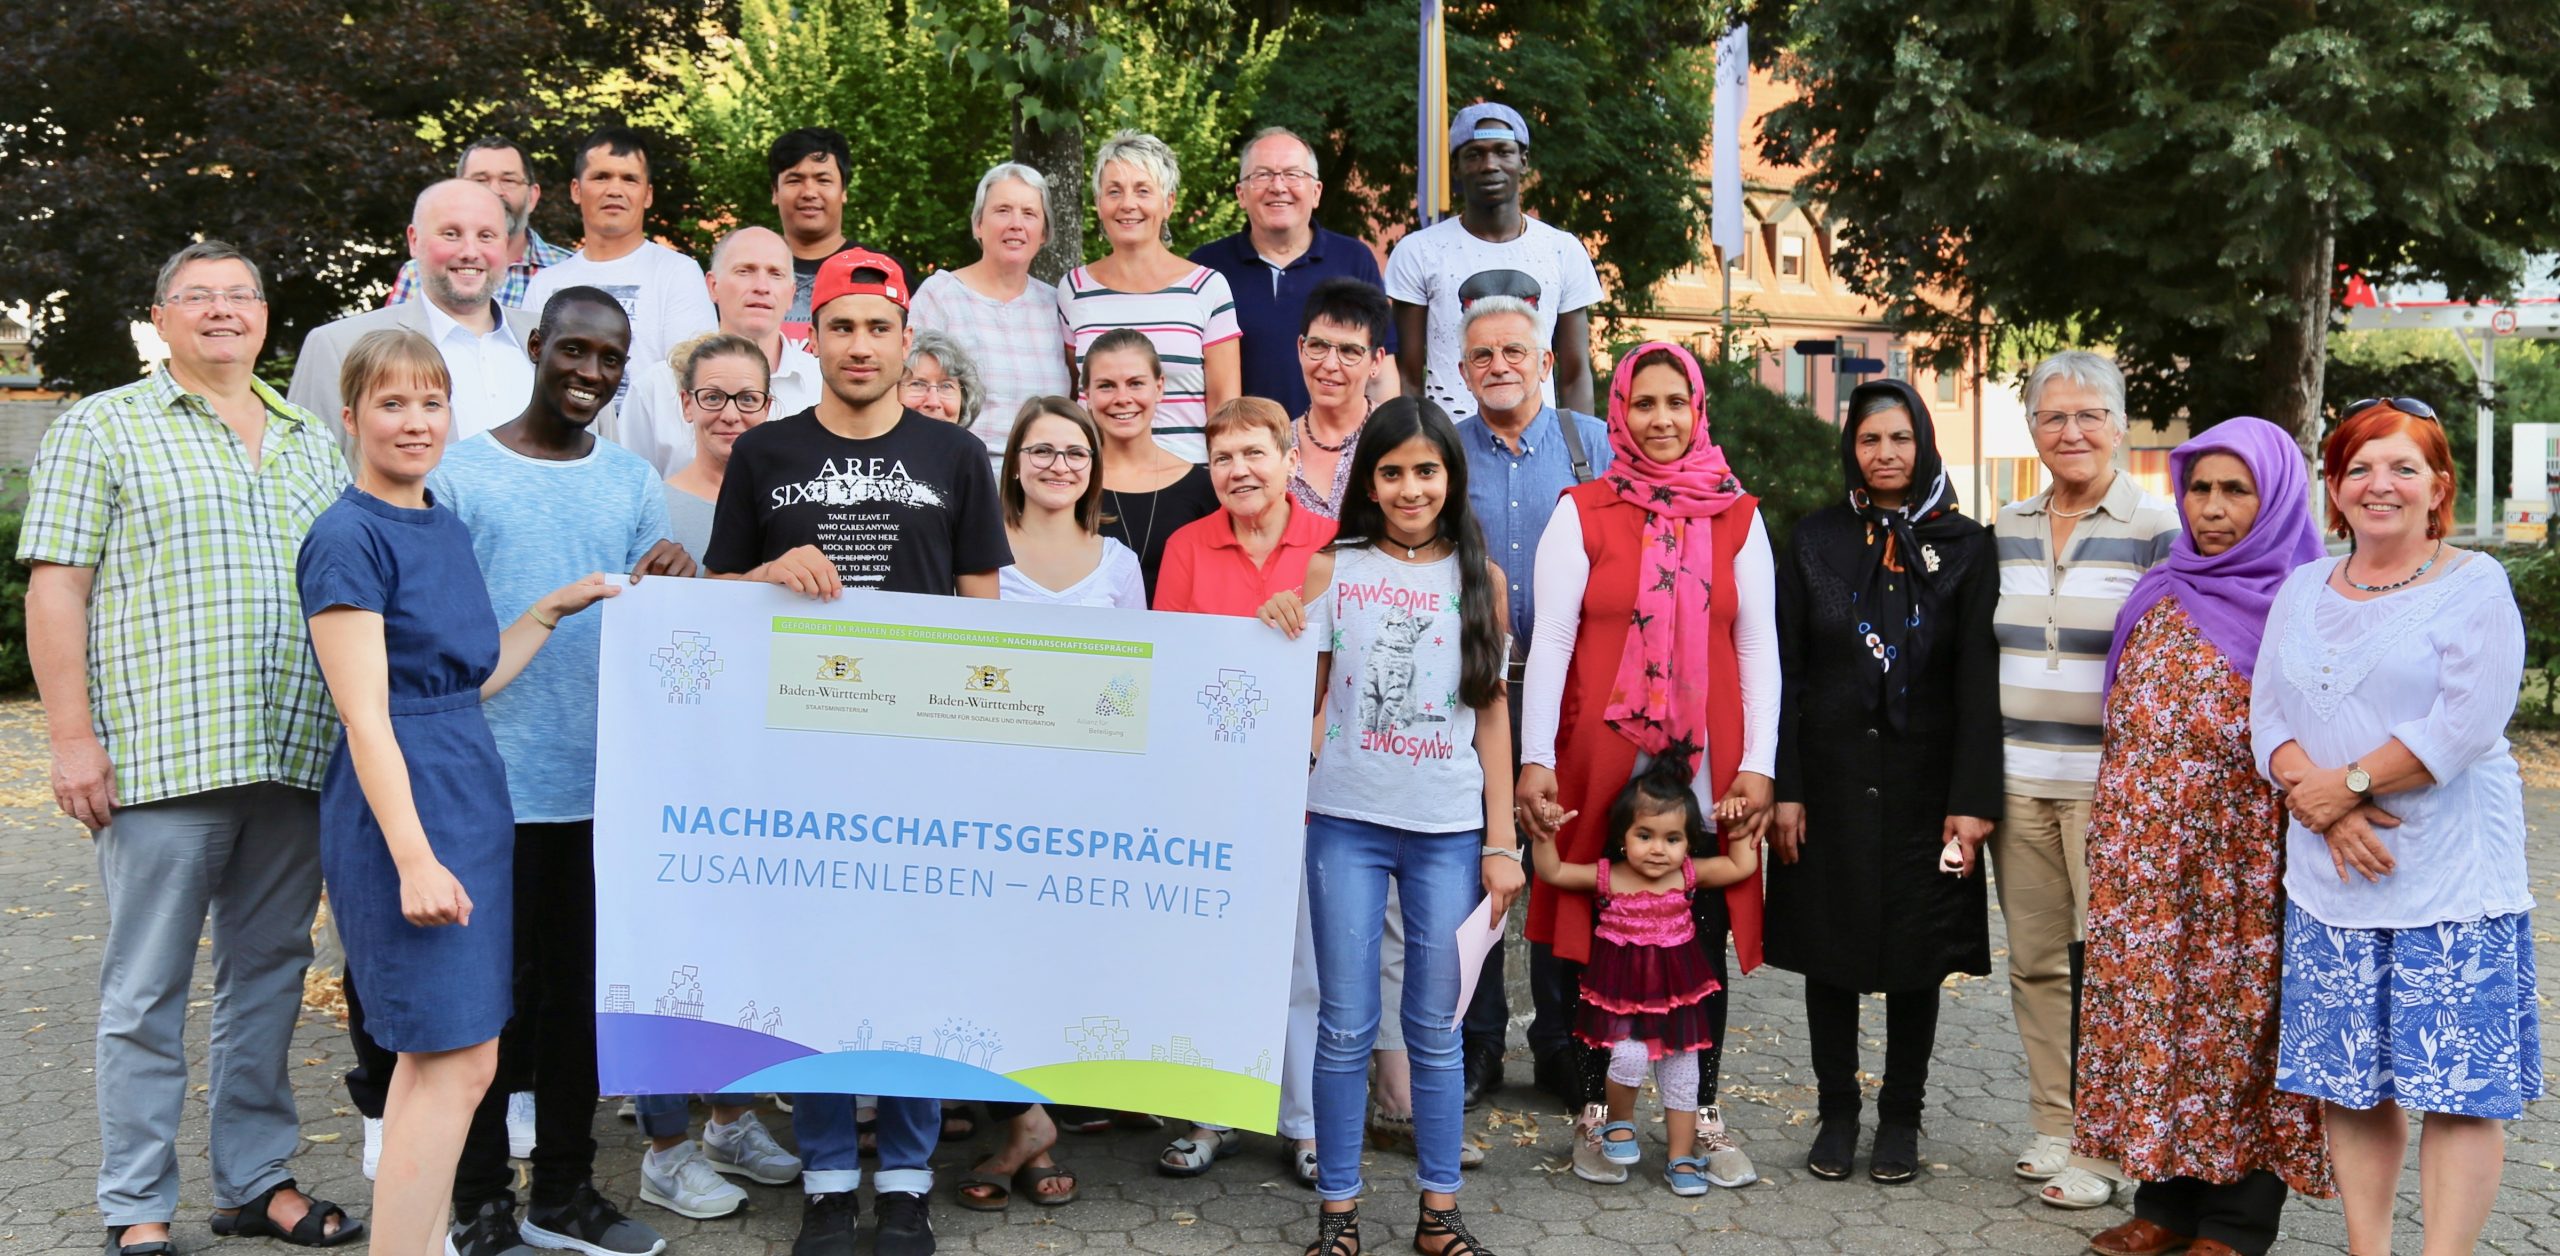 Zu sehen sind mehrere Personen, die nebeneinander im Freien stehen und für ein Foto posieren, Aufgenommen wurde das Bild in Alpirsbach im Rahmen der Nachbarschaftsgespräche.